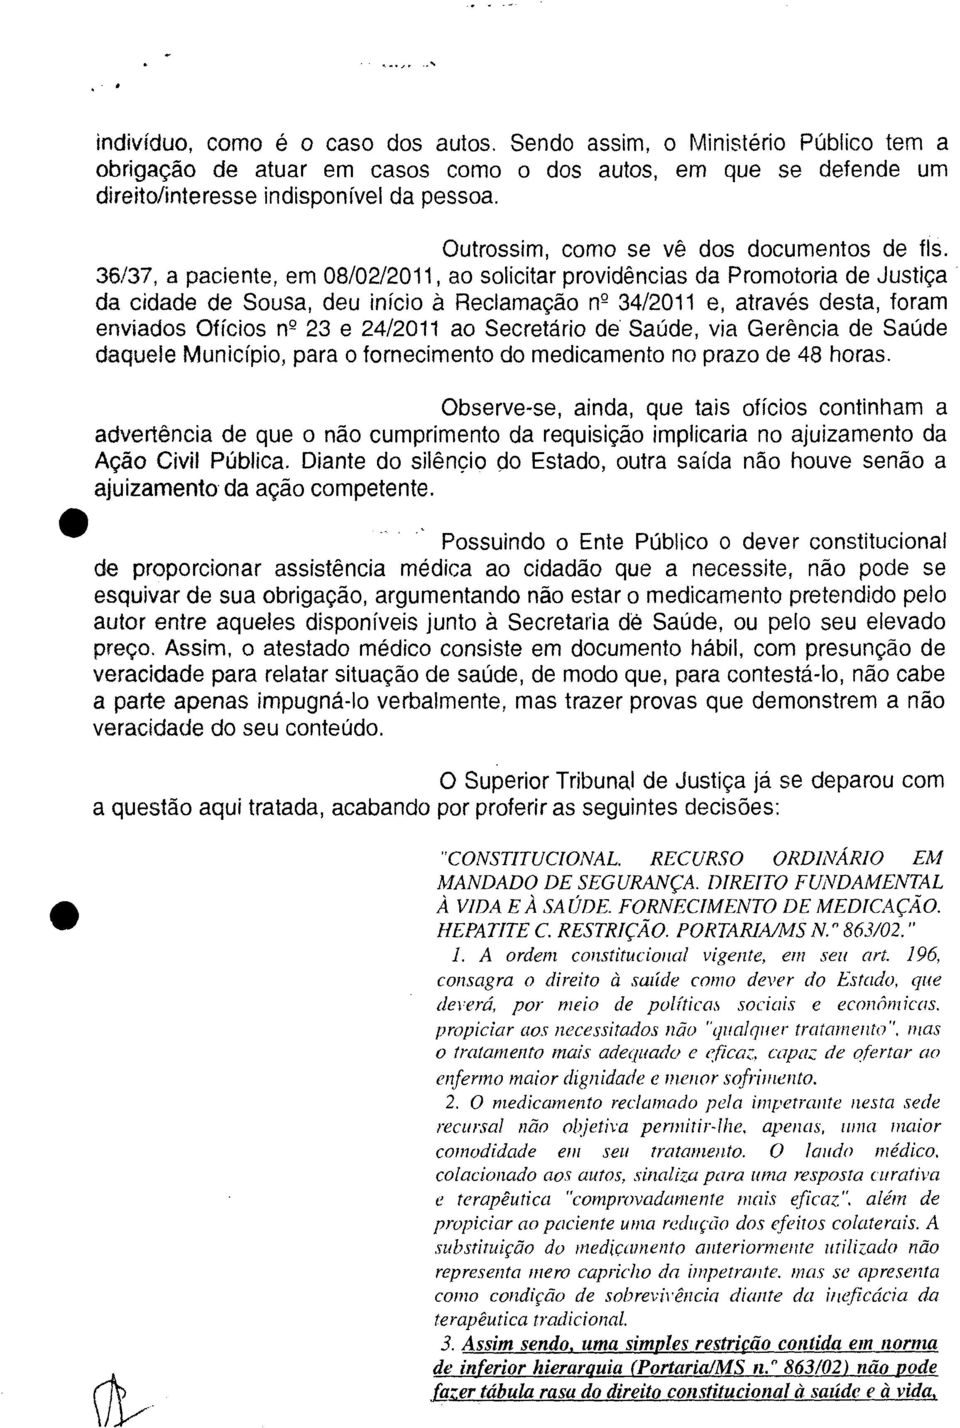 36/37, a paciente, em 08/02/2011, ao solicitar providências da Promotoria de Justiça da cidade de Sousa, deu início à Reclamação n 2 34/2011 e, através desta, foram enviados Ofícios n 2 23 e 24/2011